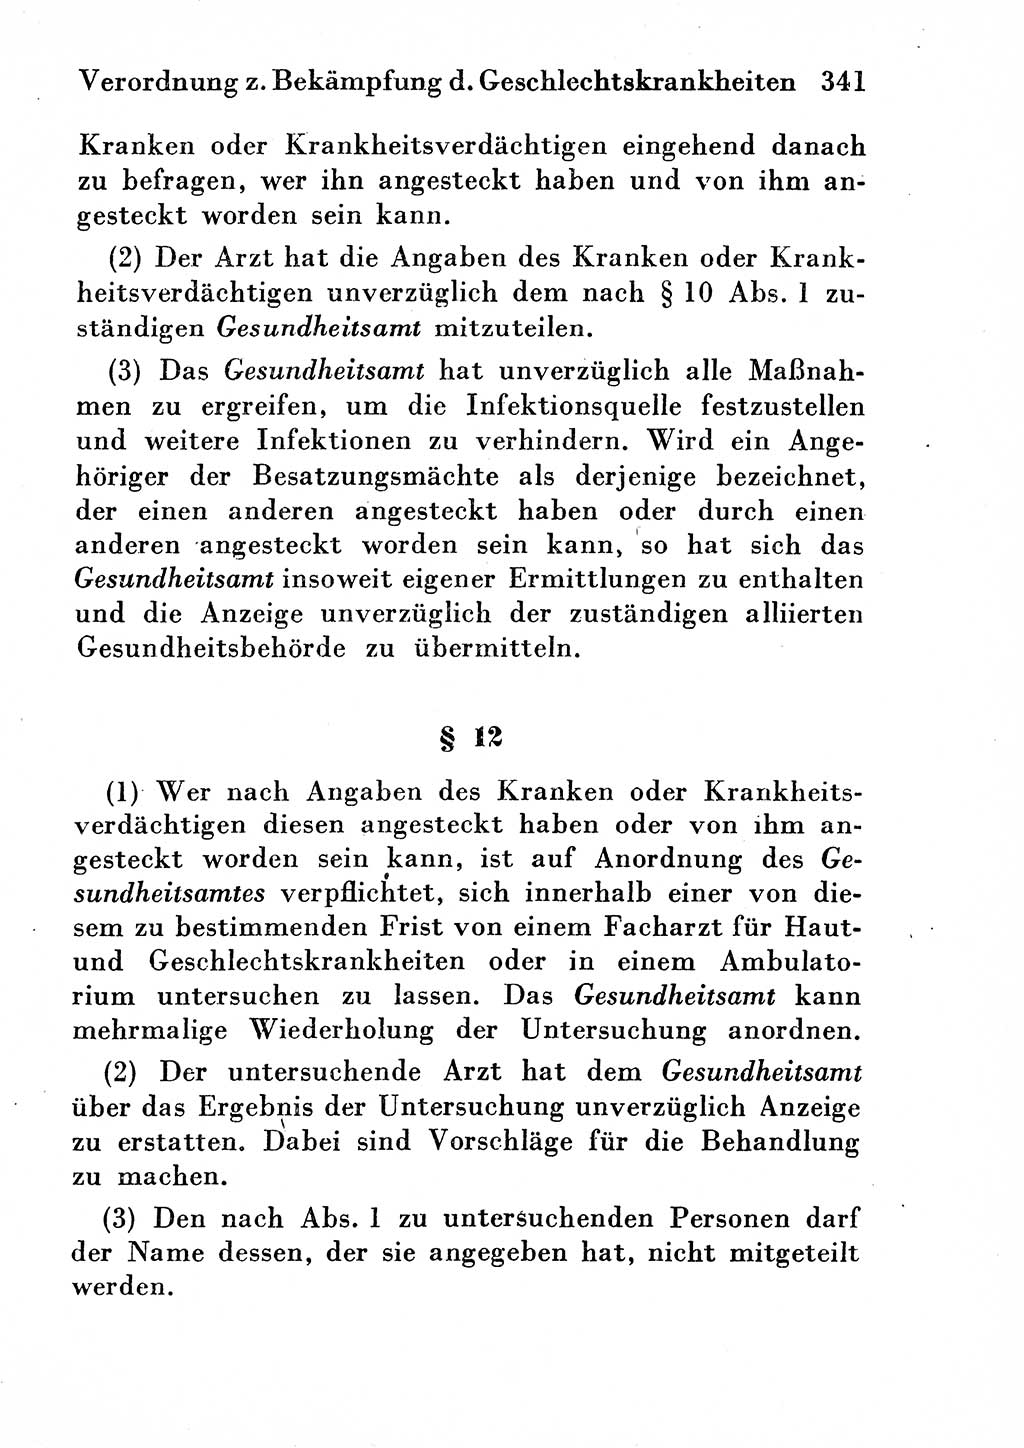 Strafgesetzbuch (StGB) und andere Strafgesetze [Deutsche Demokratische Republik (DDR)] 1954, Seite 341 (StGB Strafges. DDR 1954, S. 341)